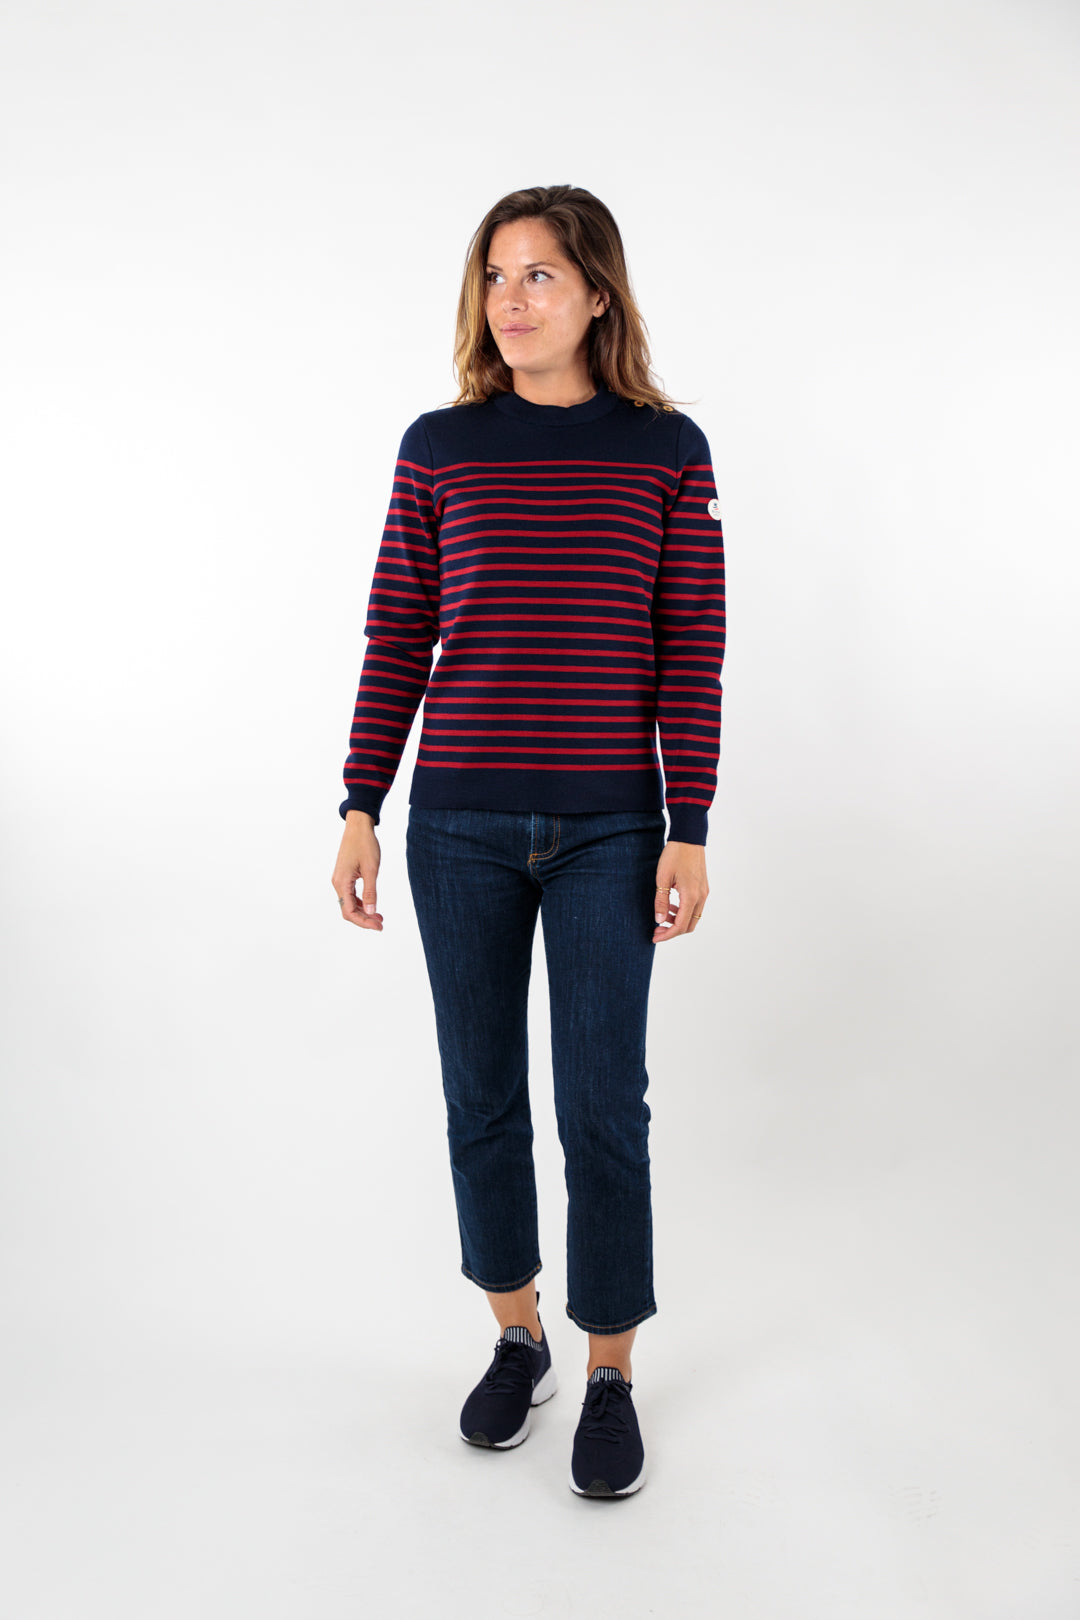 Striped sailor sweater with round neckline 